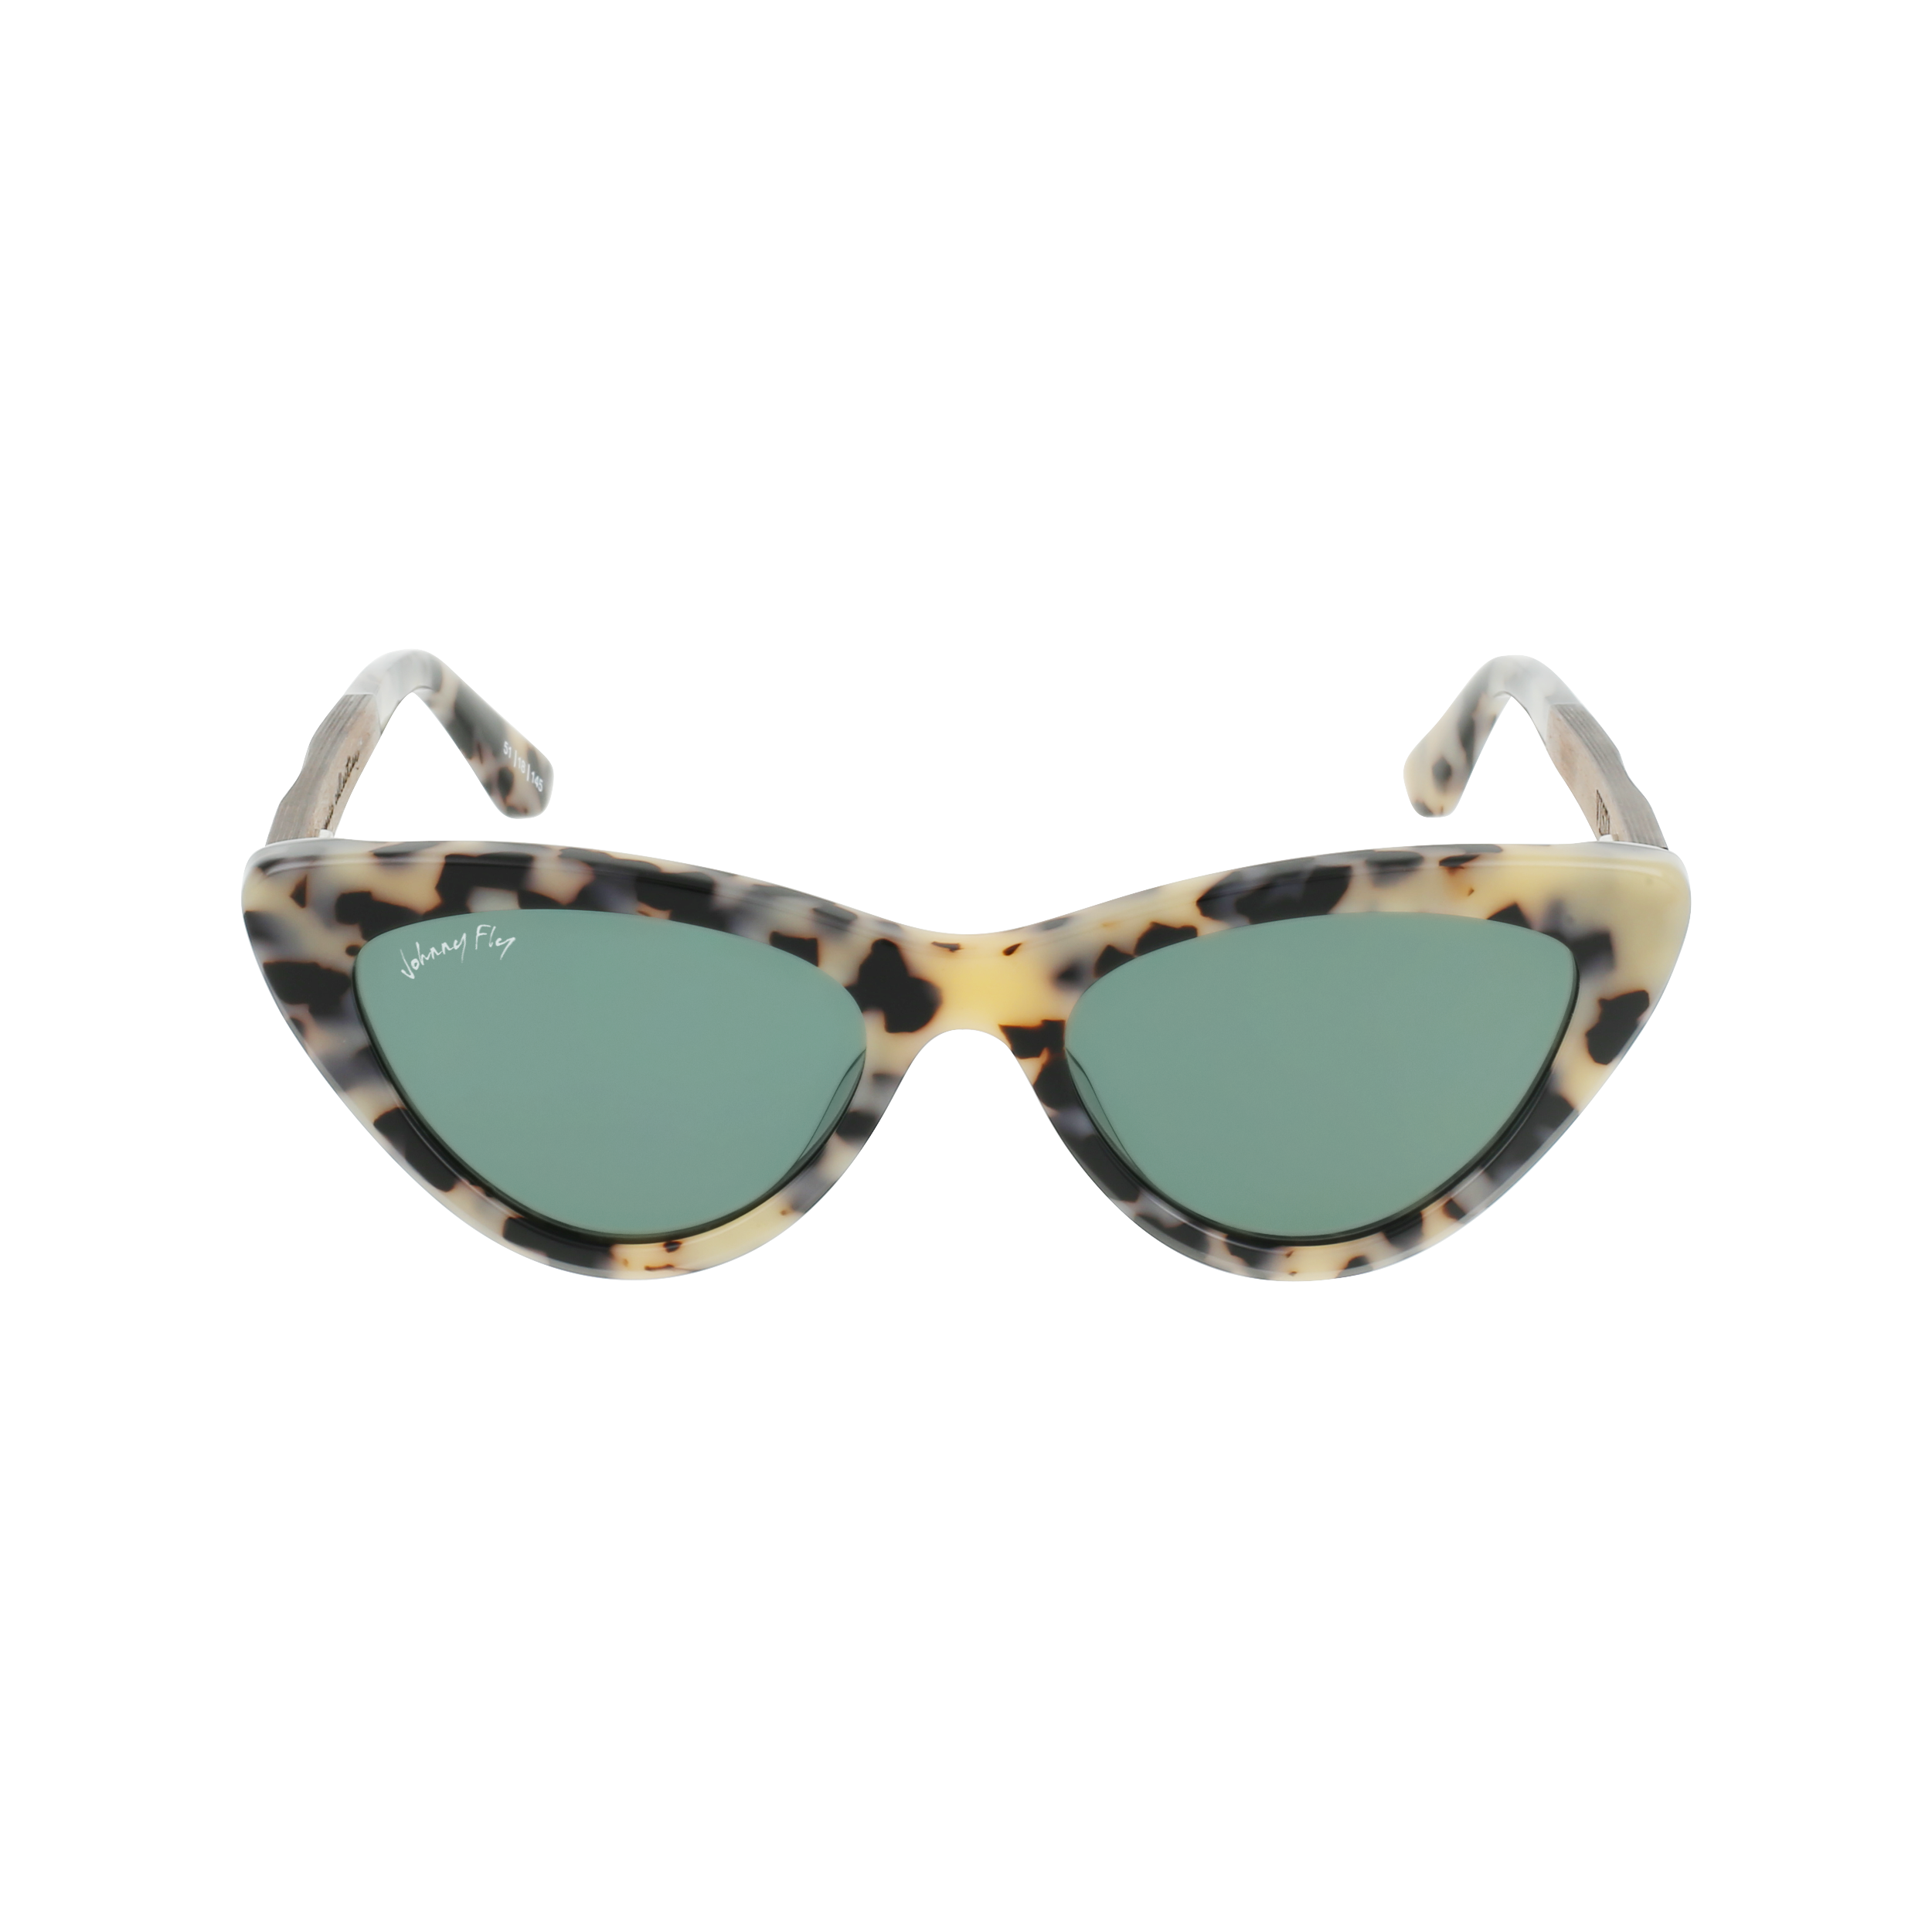 VISTA Sunglasses Frame - White Tortoise- Johnny Fly | VIS-WTRT-POL-G15-WAL | | 